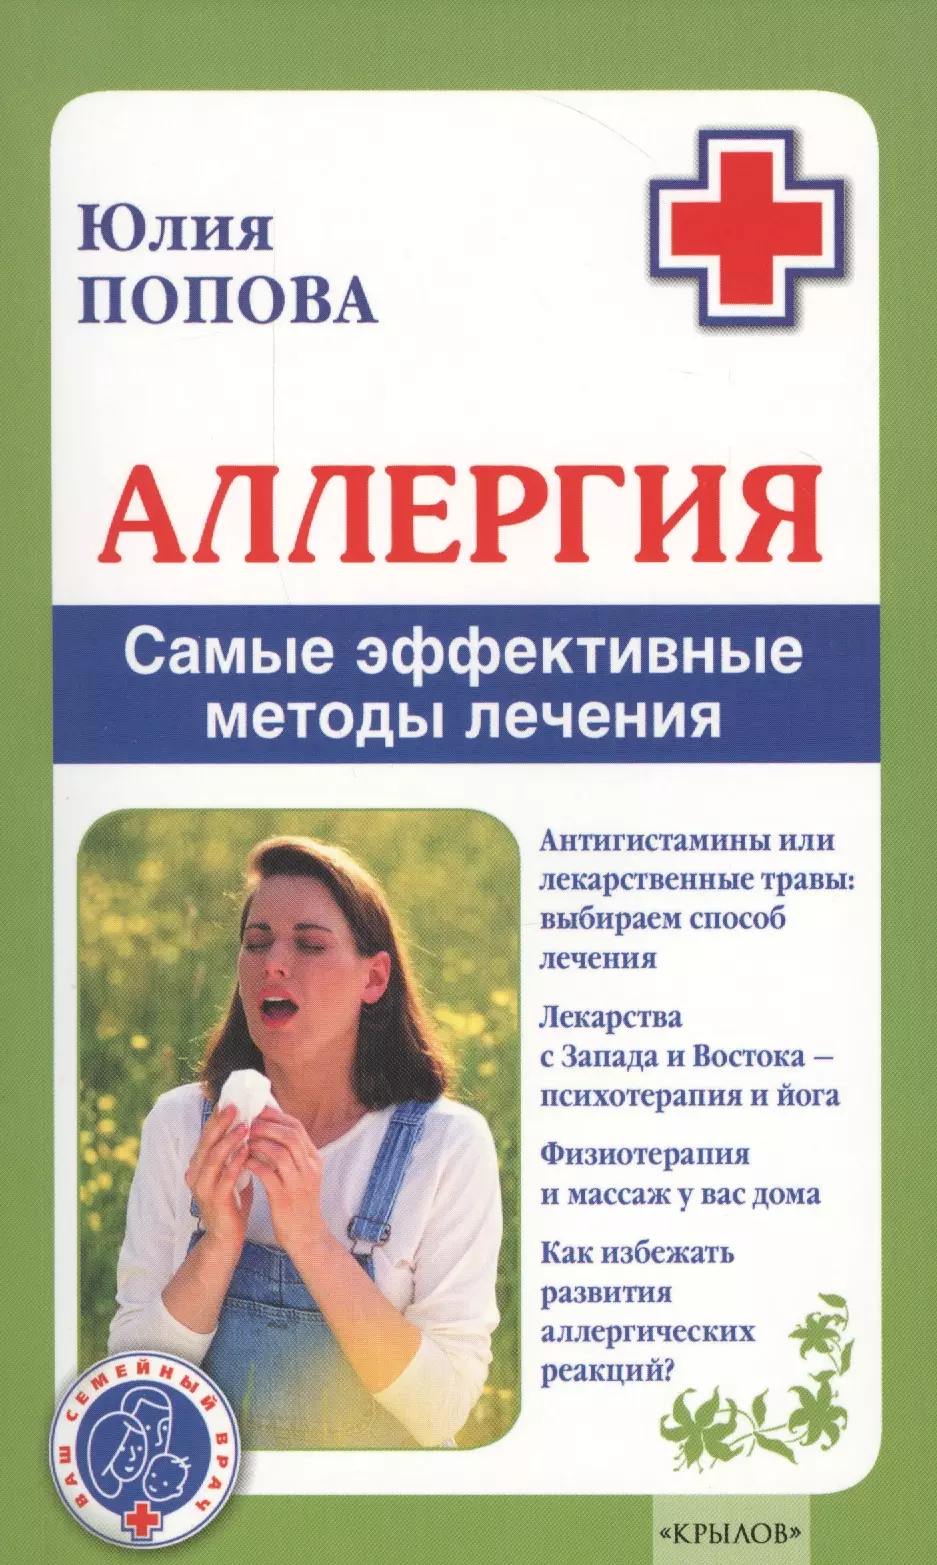 Попова Юлия - Аллергия. Самые эффективные методы лечения